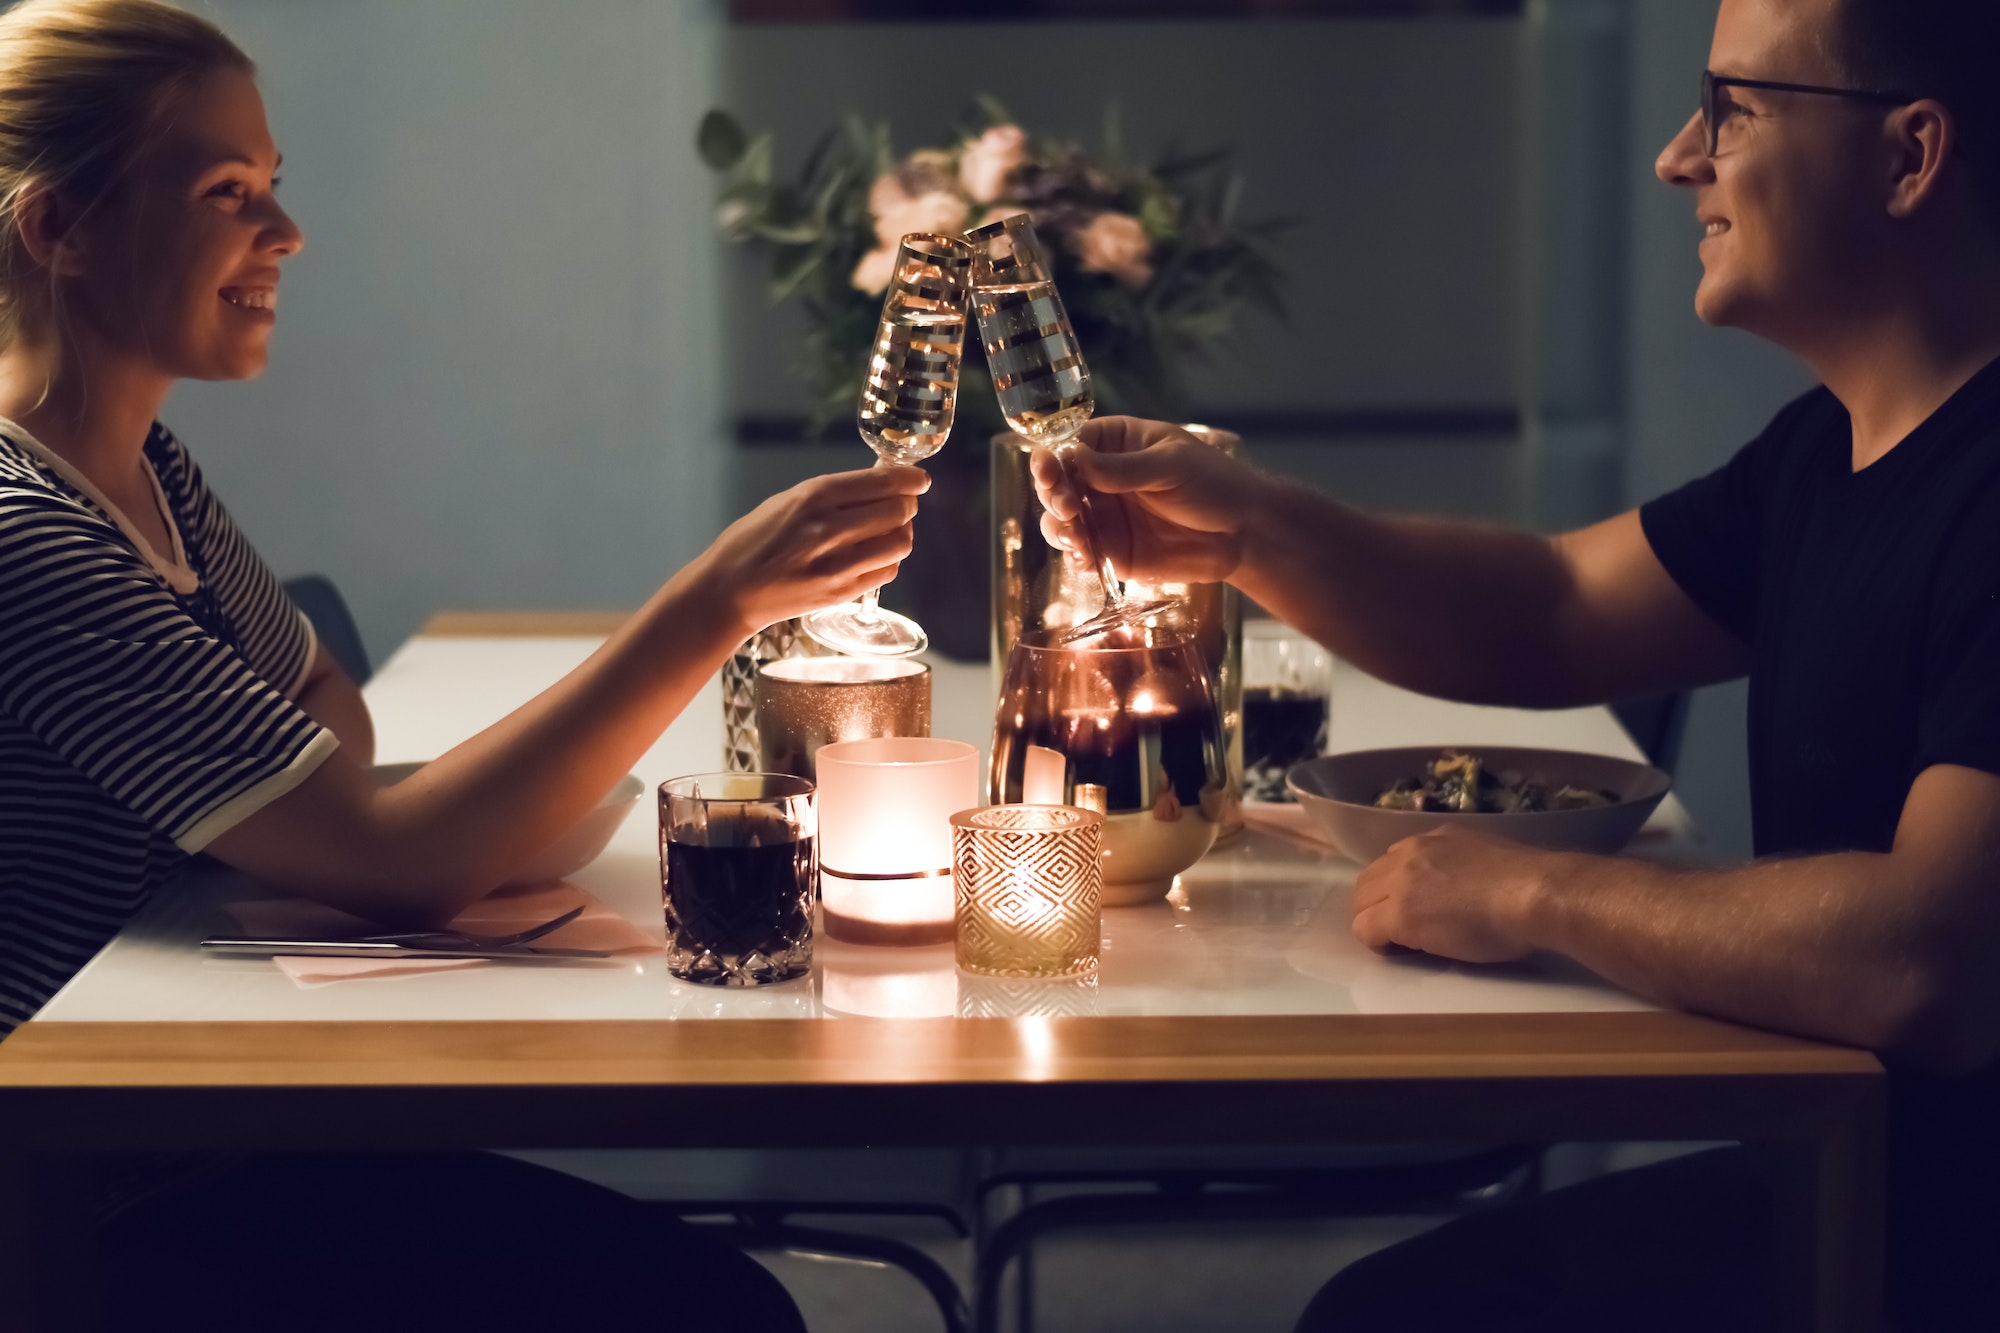 Comment organiser un dîner romantique à la maison pour s’amuser ensemble ?